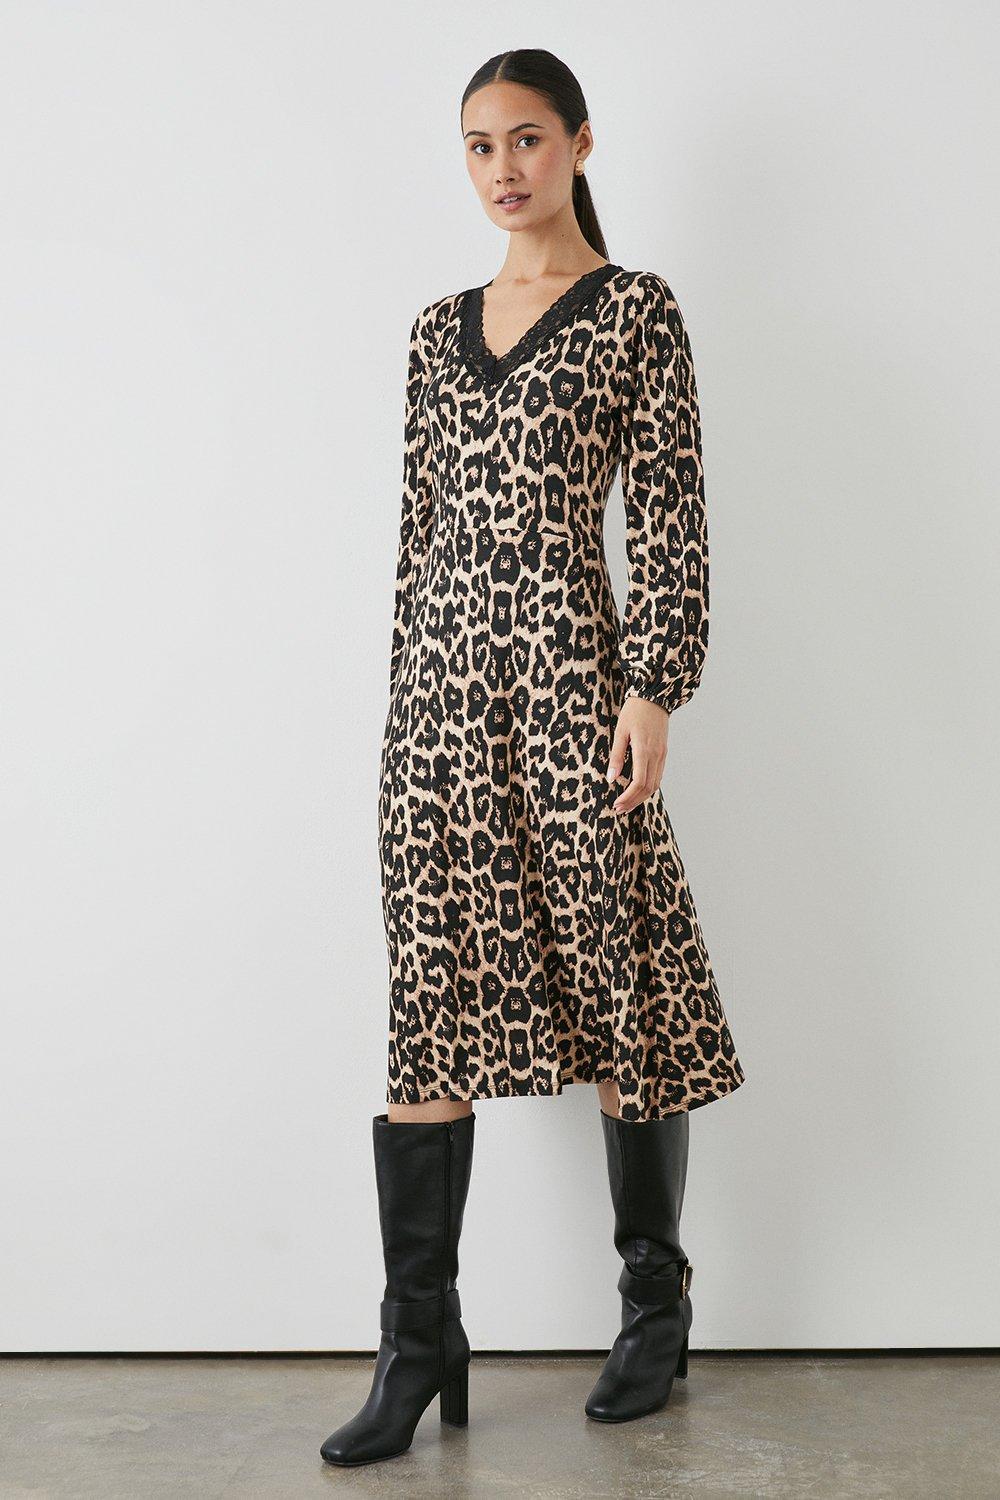 Leopard Print V Neck Jersey Lace Trim Dress